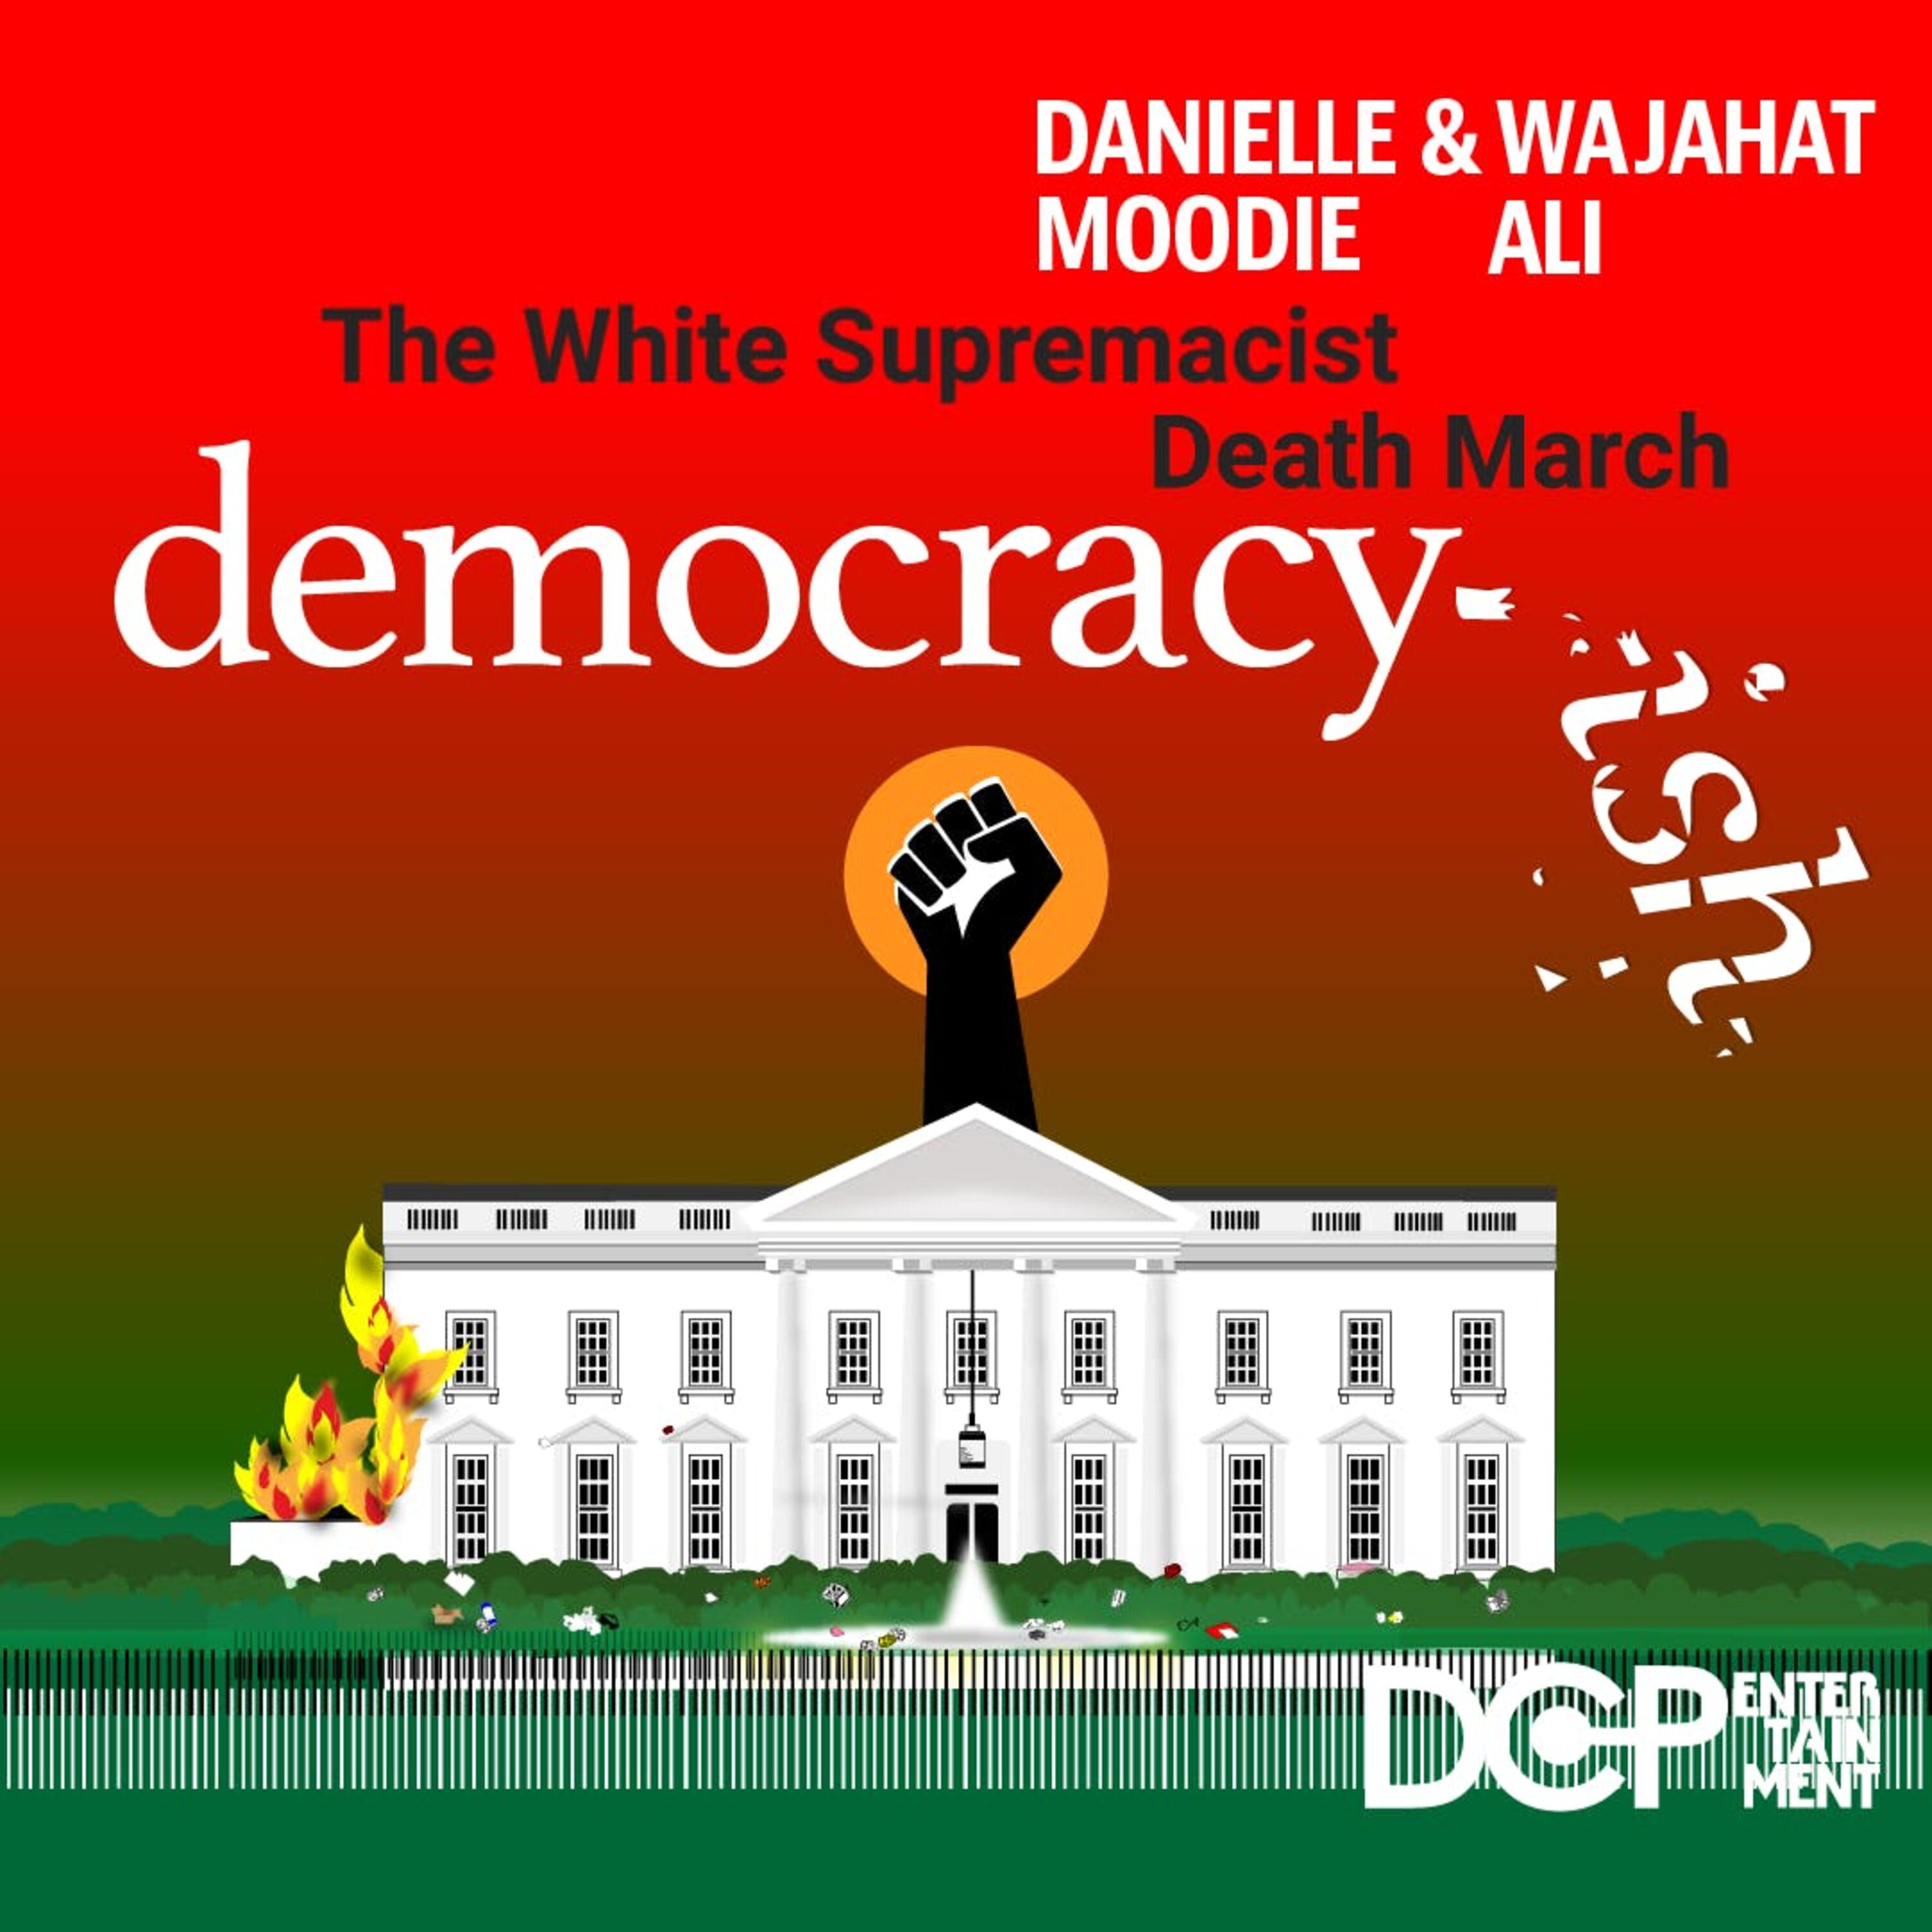 The White Supremacist Death March